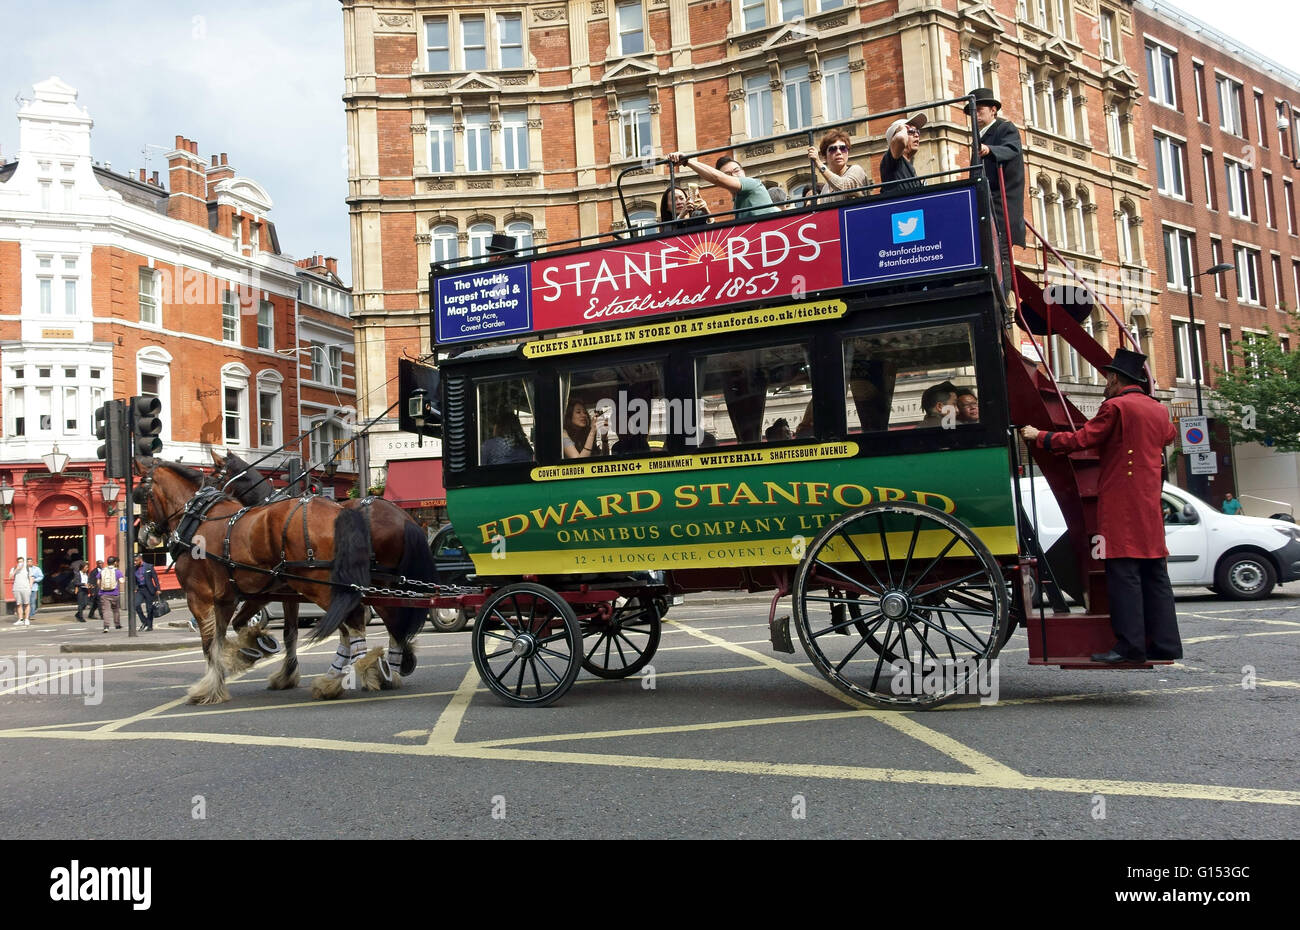 El estilo victoriano de caballos turística consolidada experiencia en West End de Londres. Foto de stock